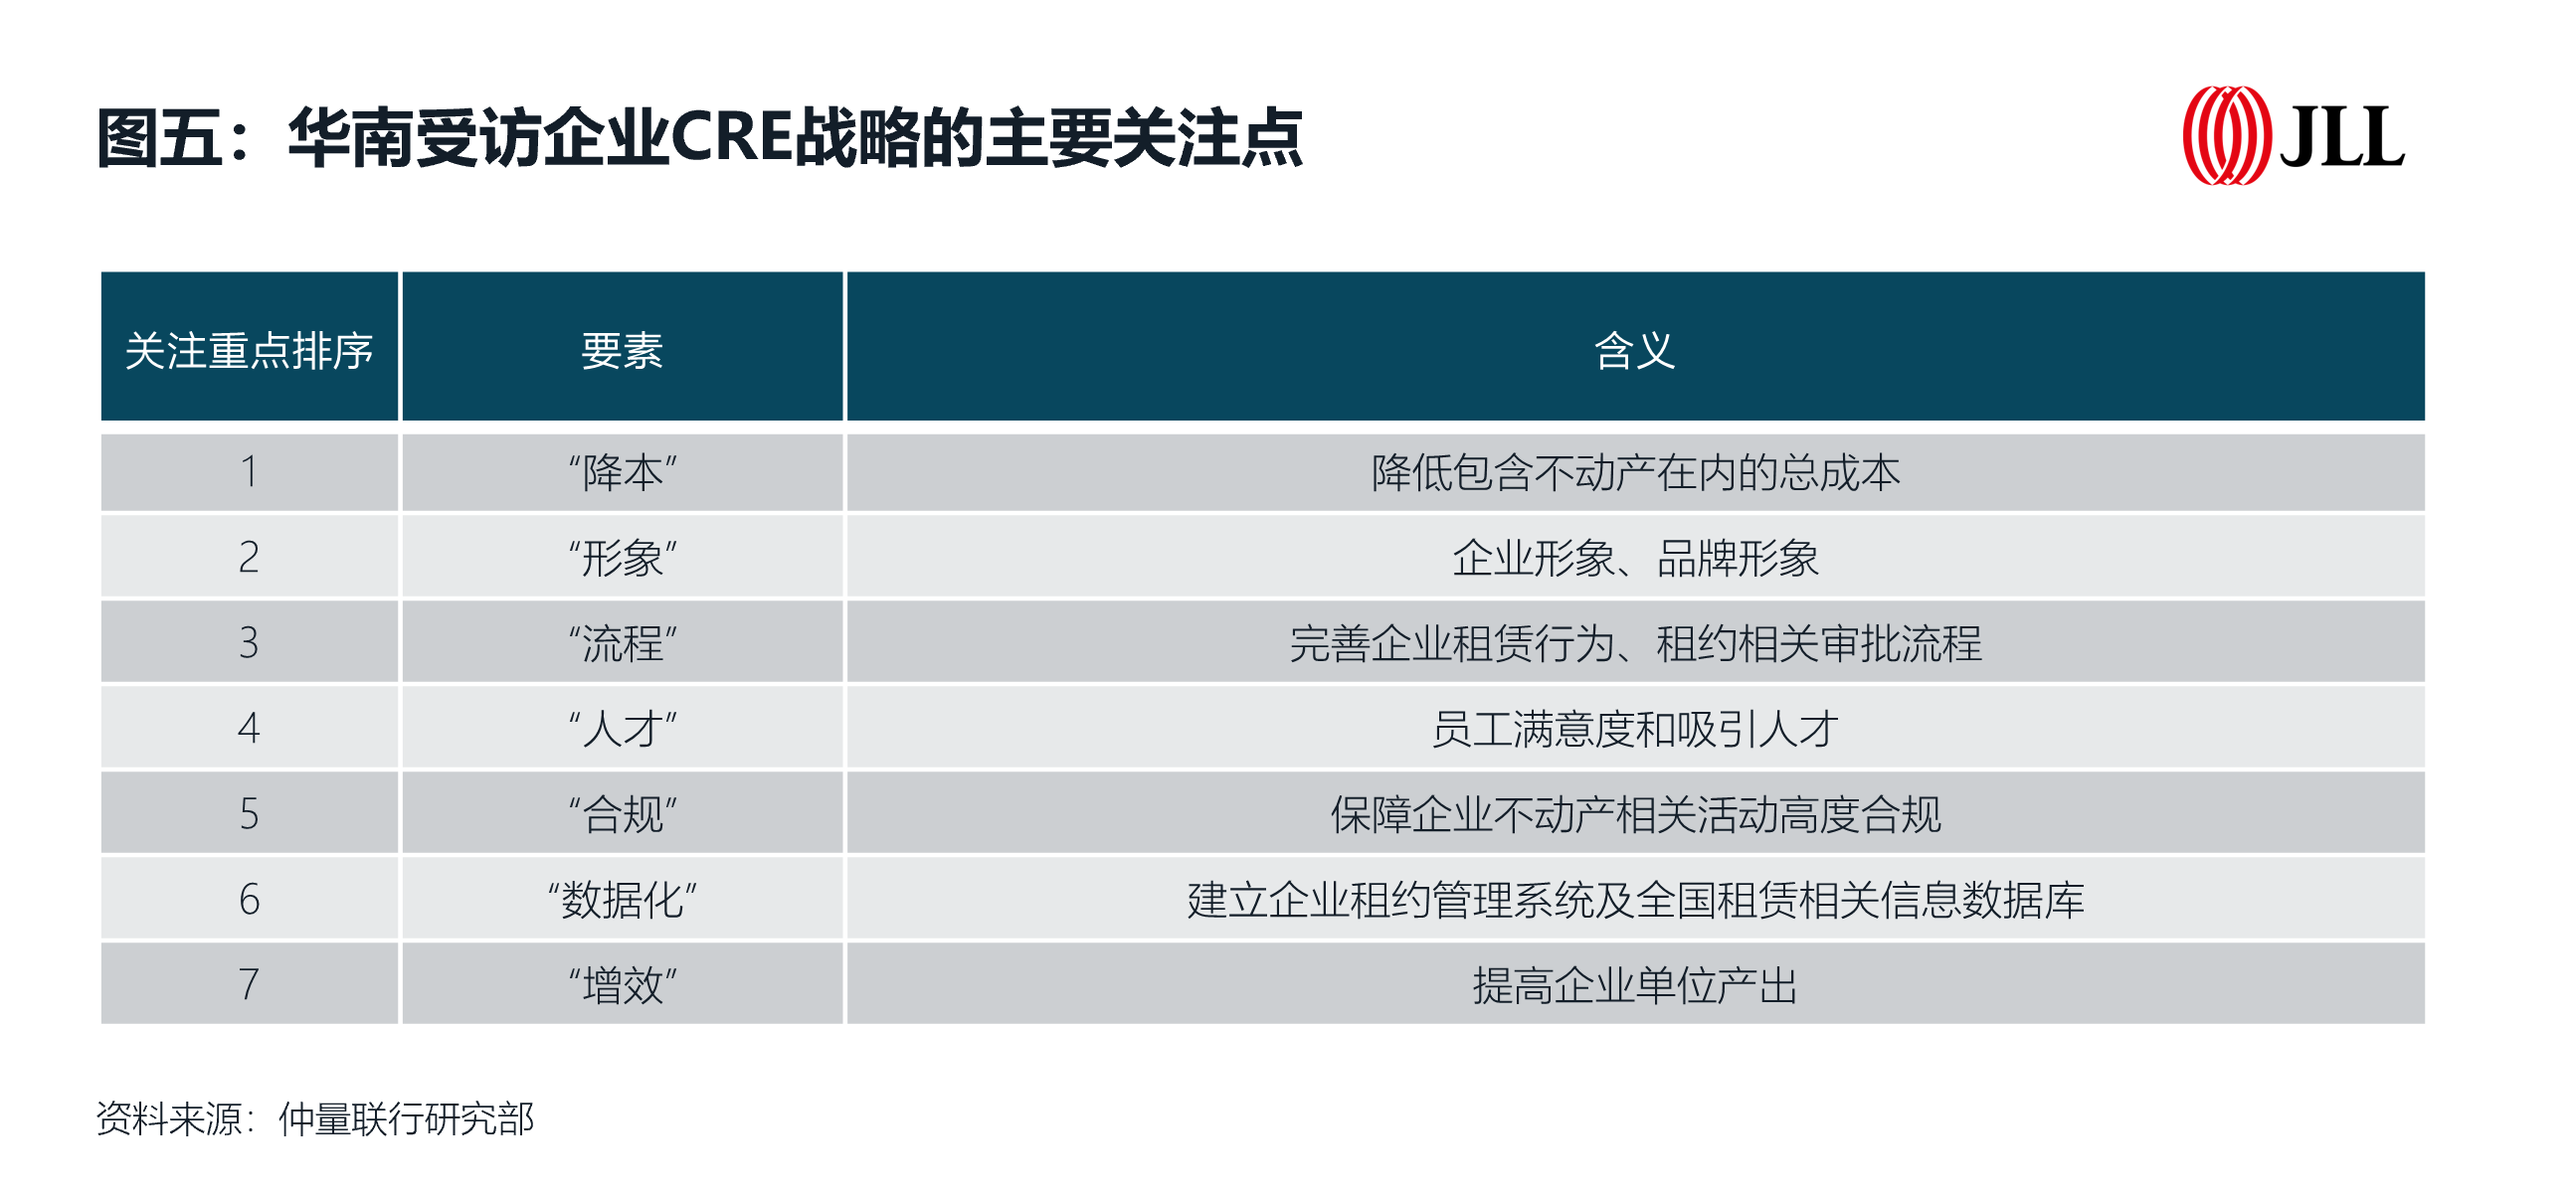 华南受访企业CRE战略的主要关注点.png